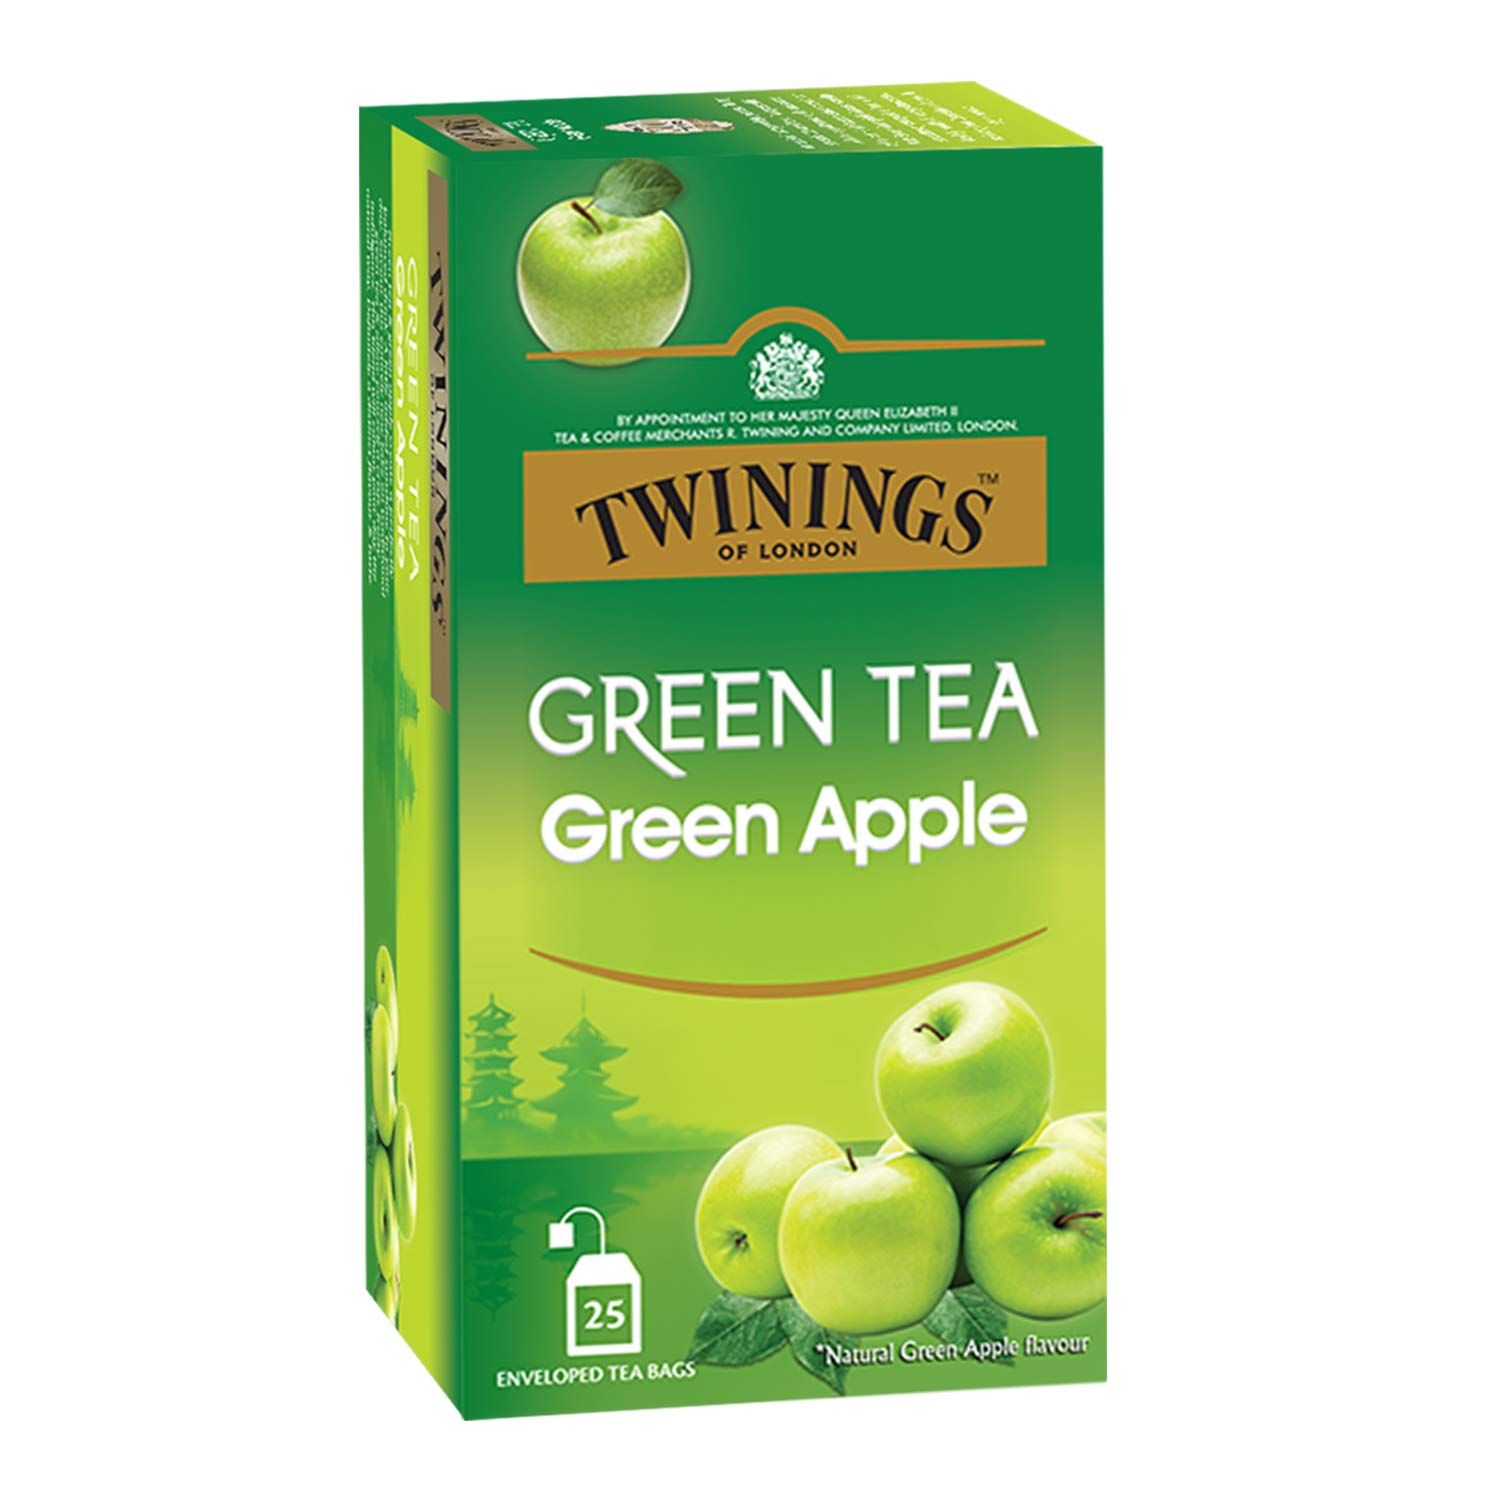 Twinings Green Tea Green Apple Image